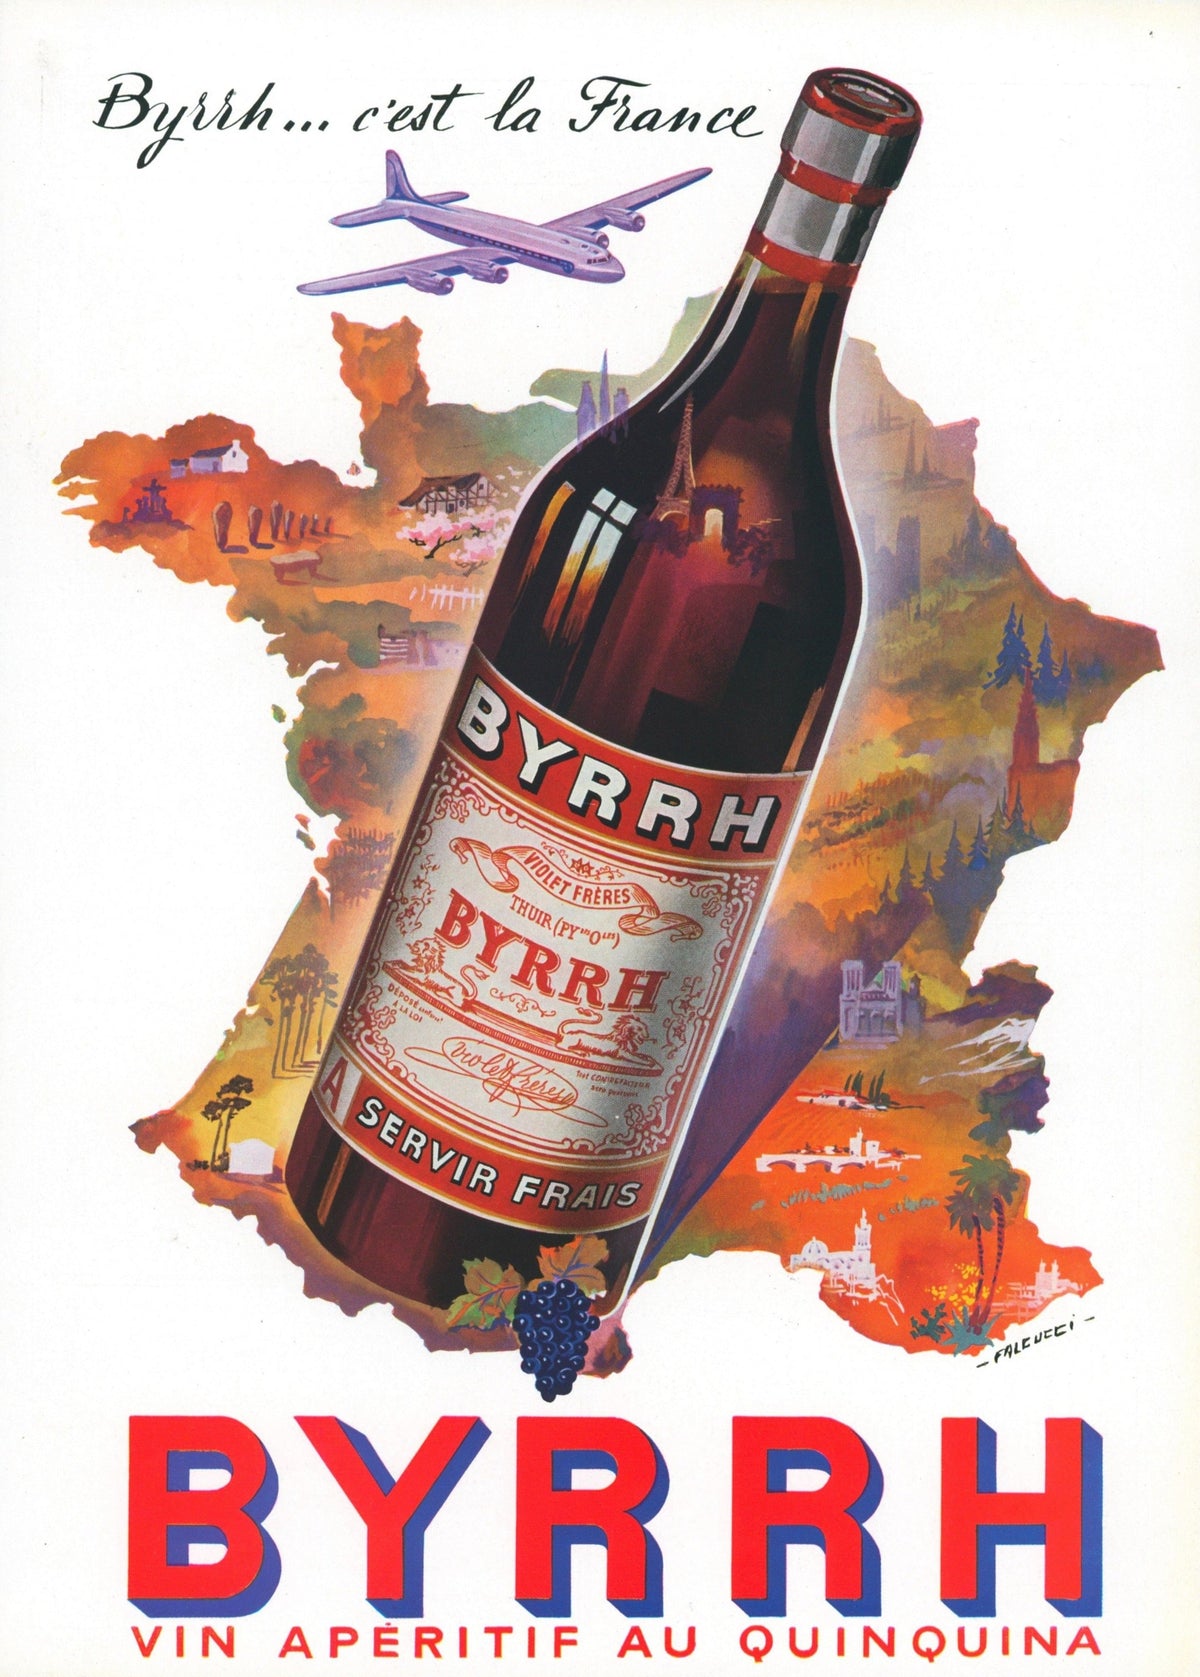 Byrrh Bottle- French Magazine Ad - Authentic Vintage Antique Print